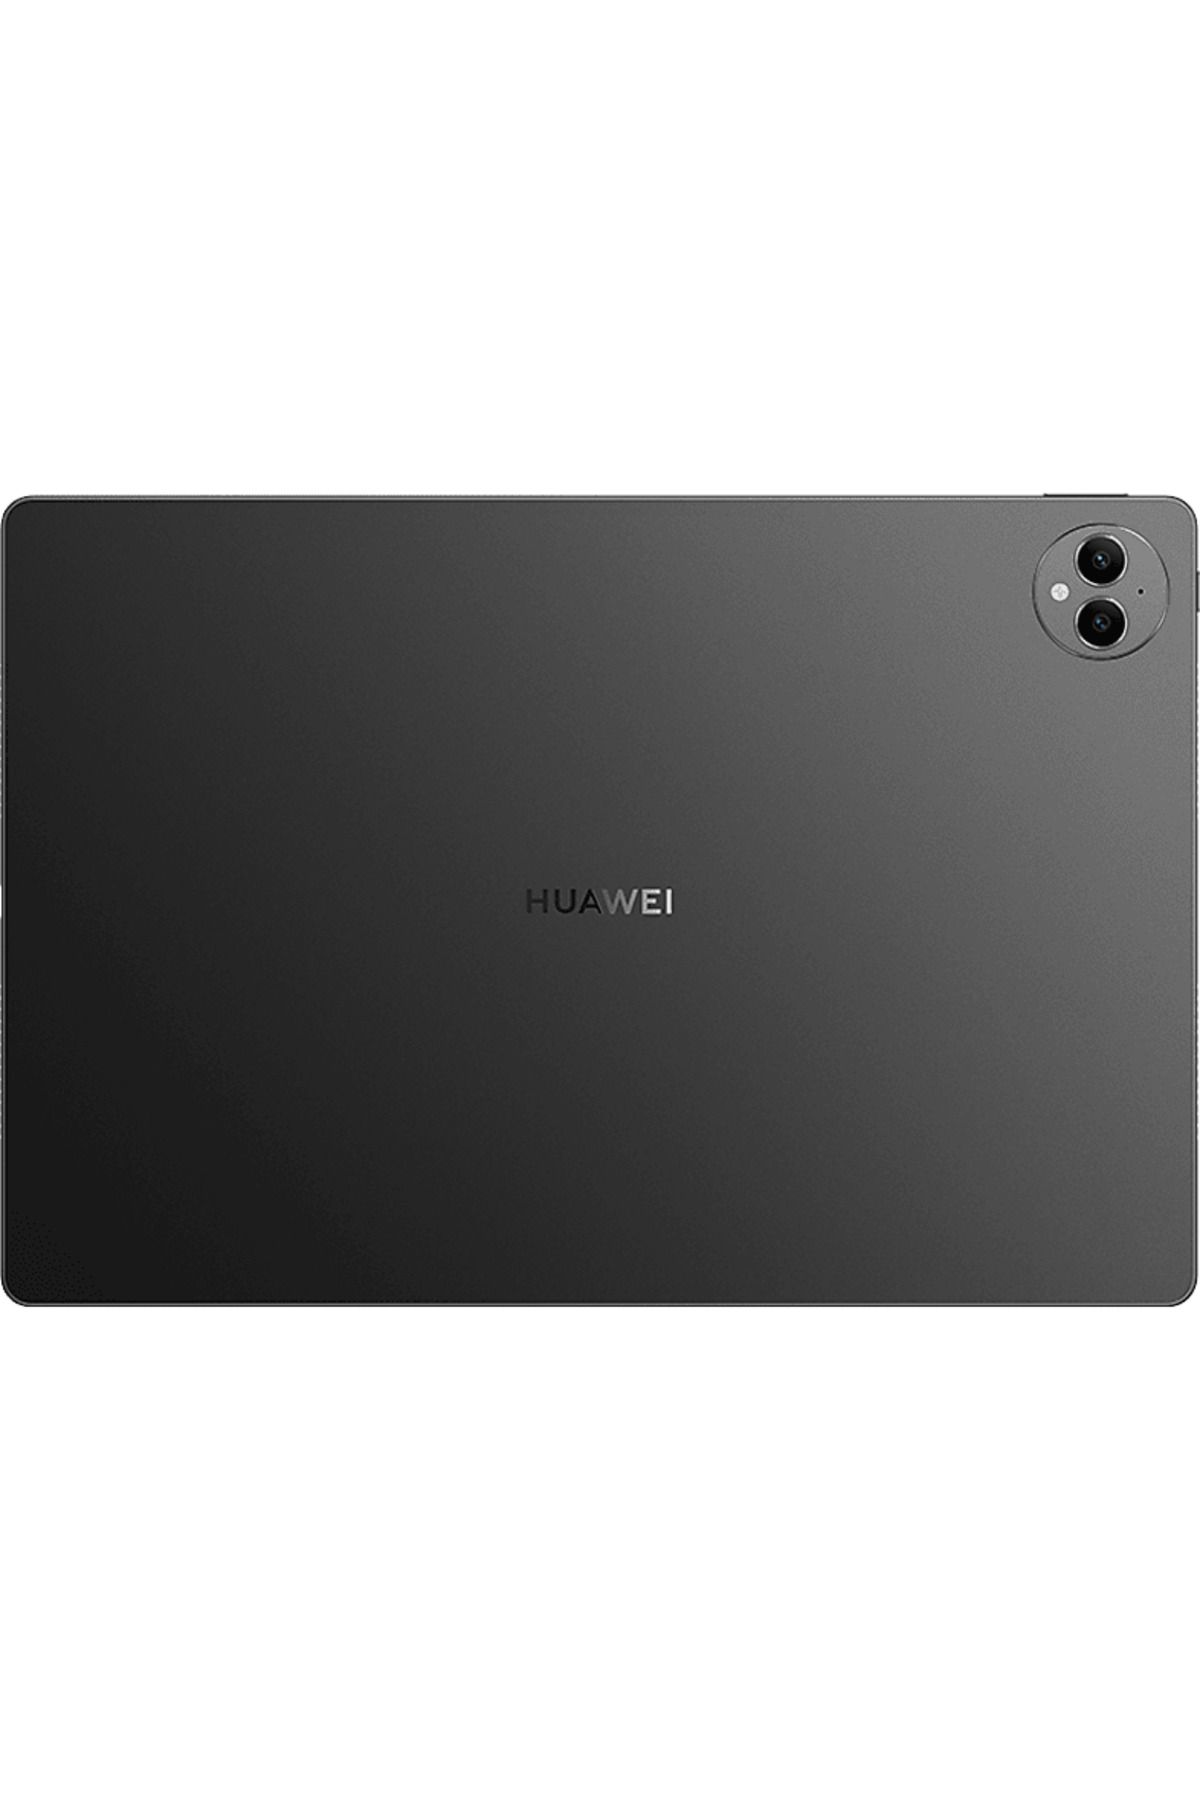 Huawei Matepad Pro 13.2 inç 12/256 GB Tablet Siyah 53013XRY